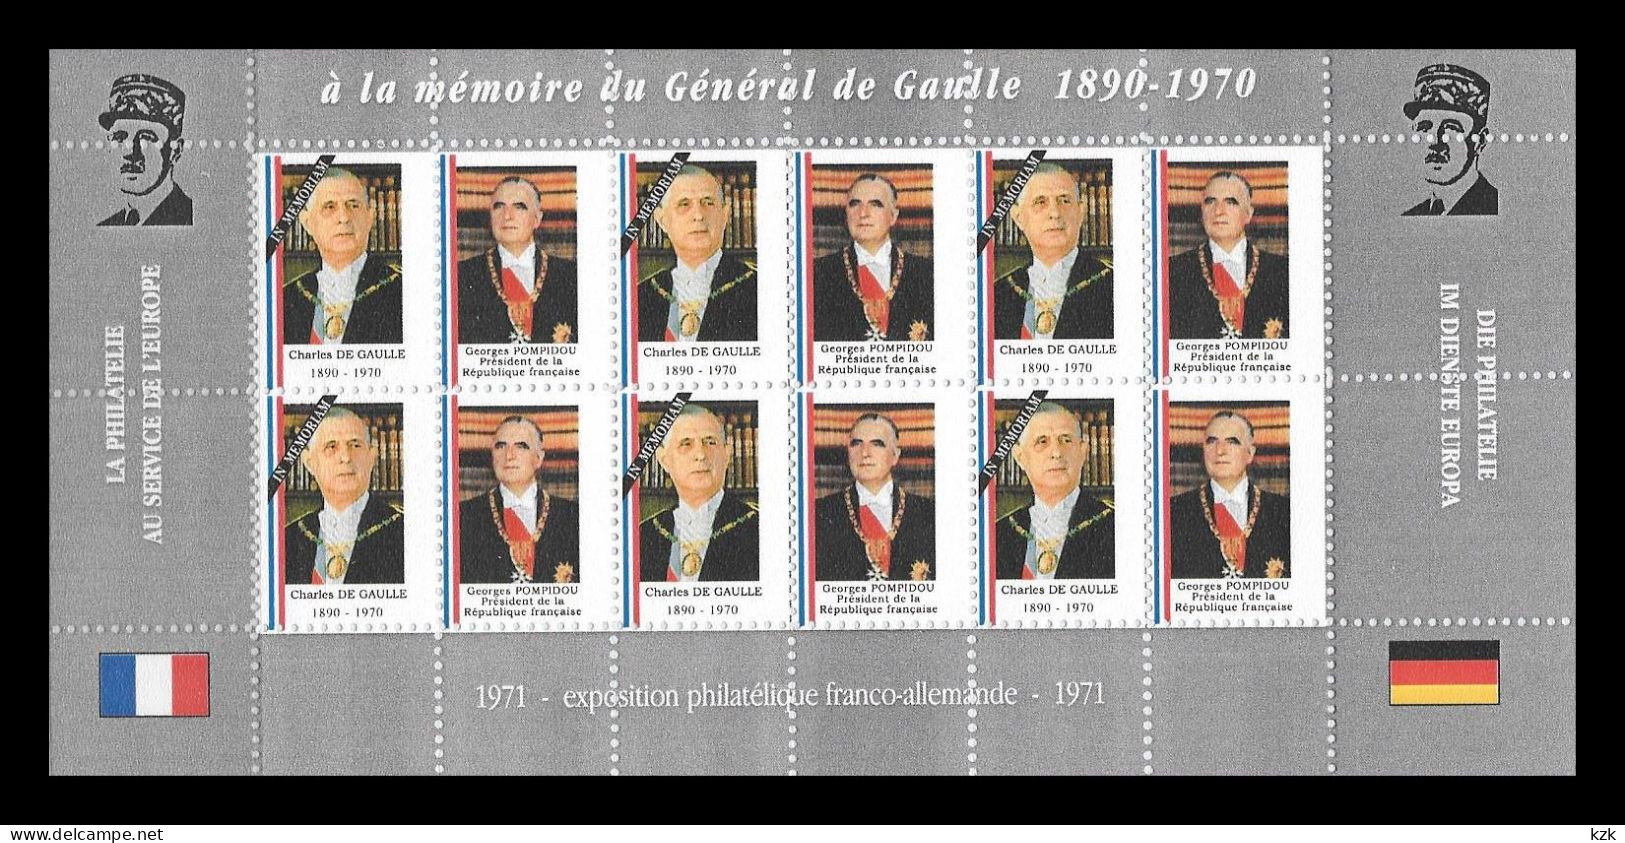 27	43 200		EUROPA - De Gaulle (Général)